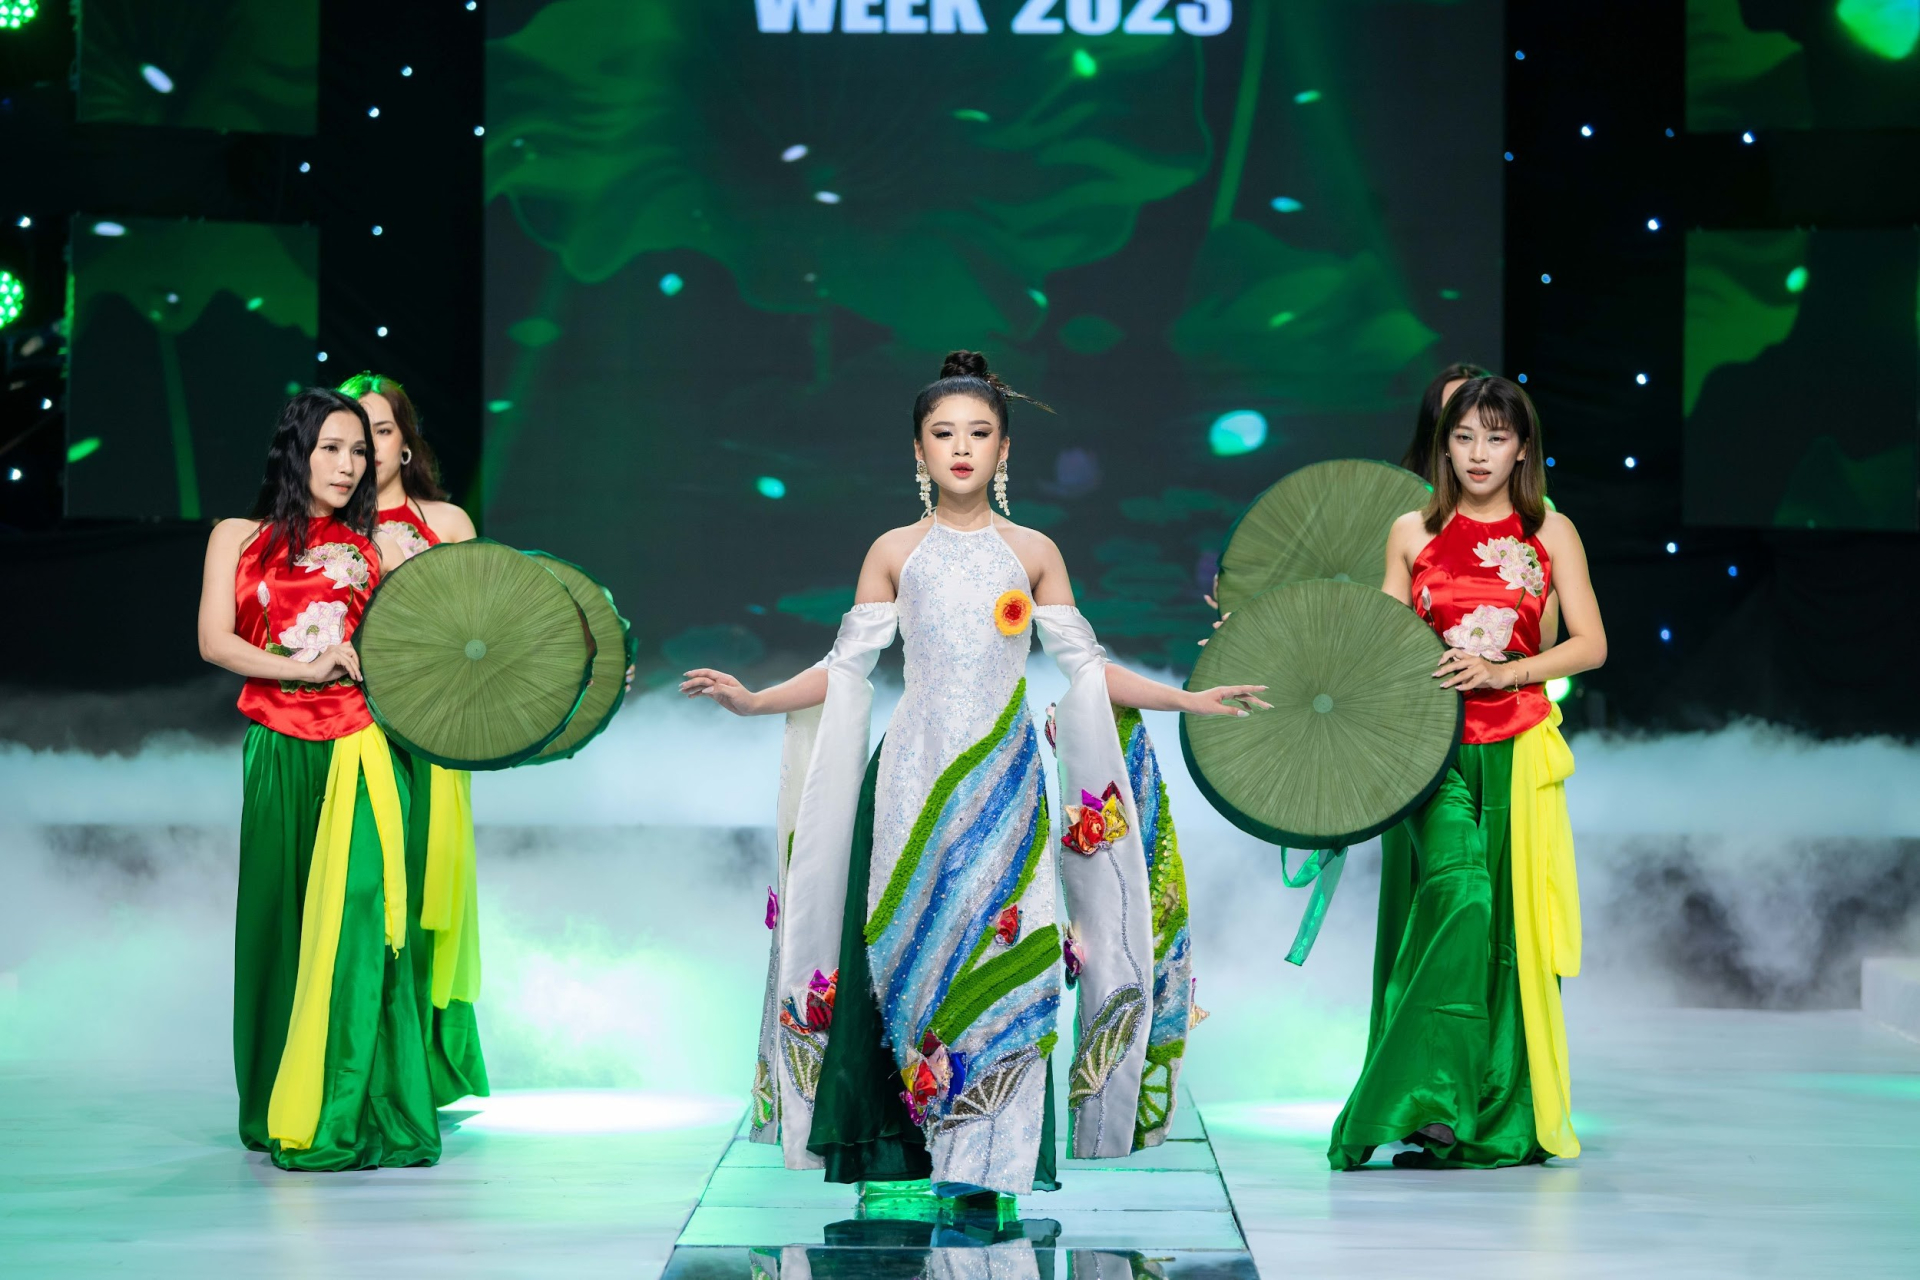 BST mang đâm nét dân gian đương đại với sự kết hợp tinh tế giữa họa tiết hoa sen- quốc hoa của Việt Nam cùng với thế giới sắc màu sang trọng của chất liệu gấm.